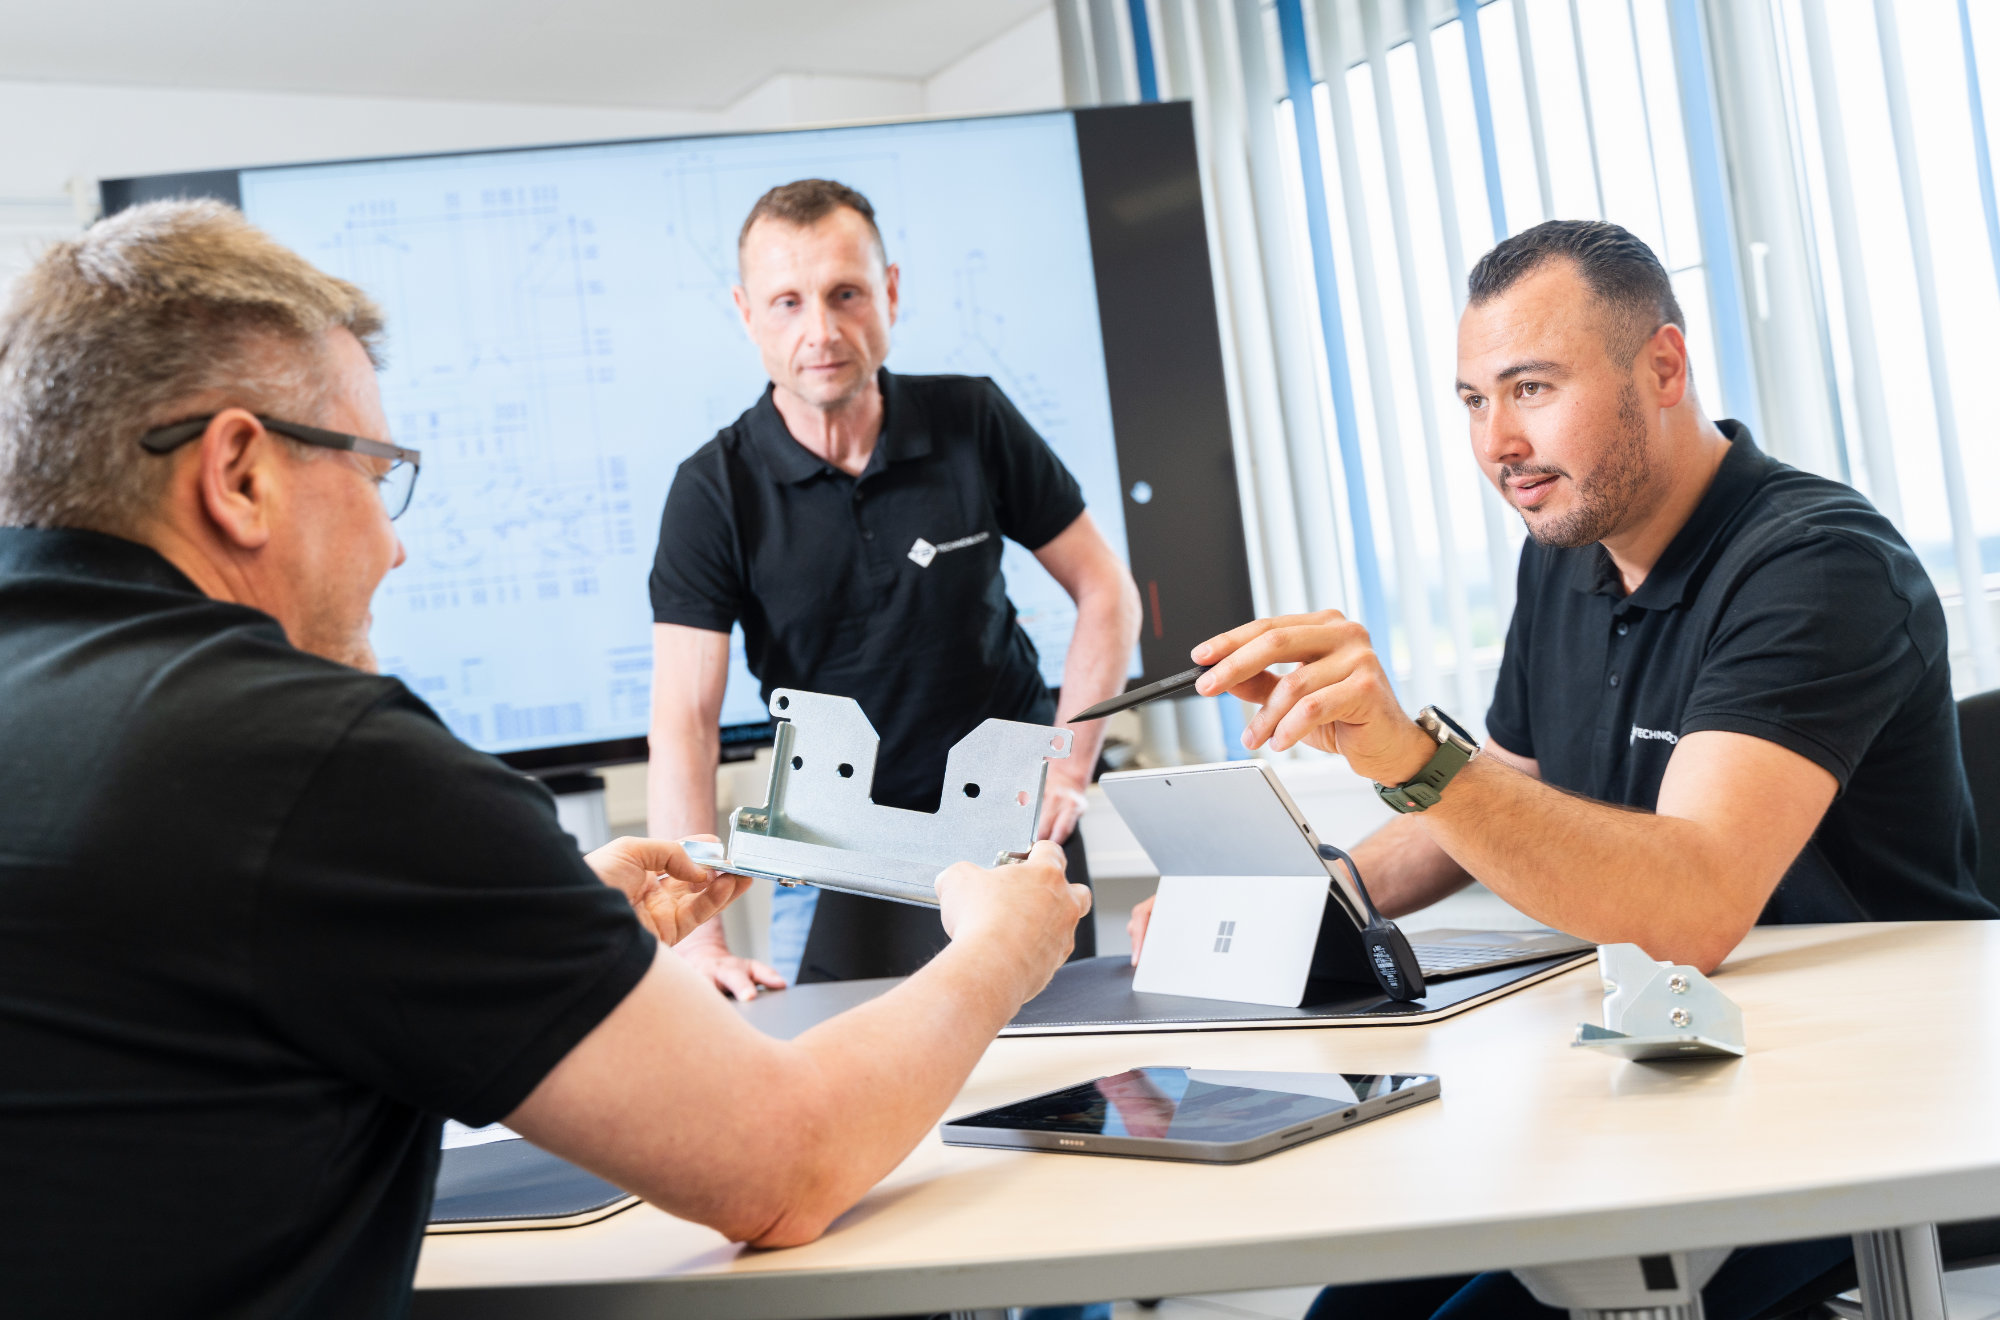 Einblick in eine Projektbesprechung des Teams der Technoblech GmbH im Meetingraum